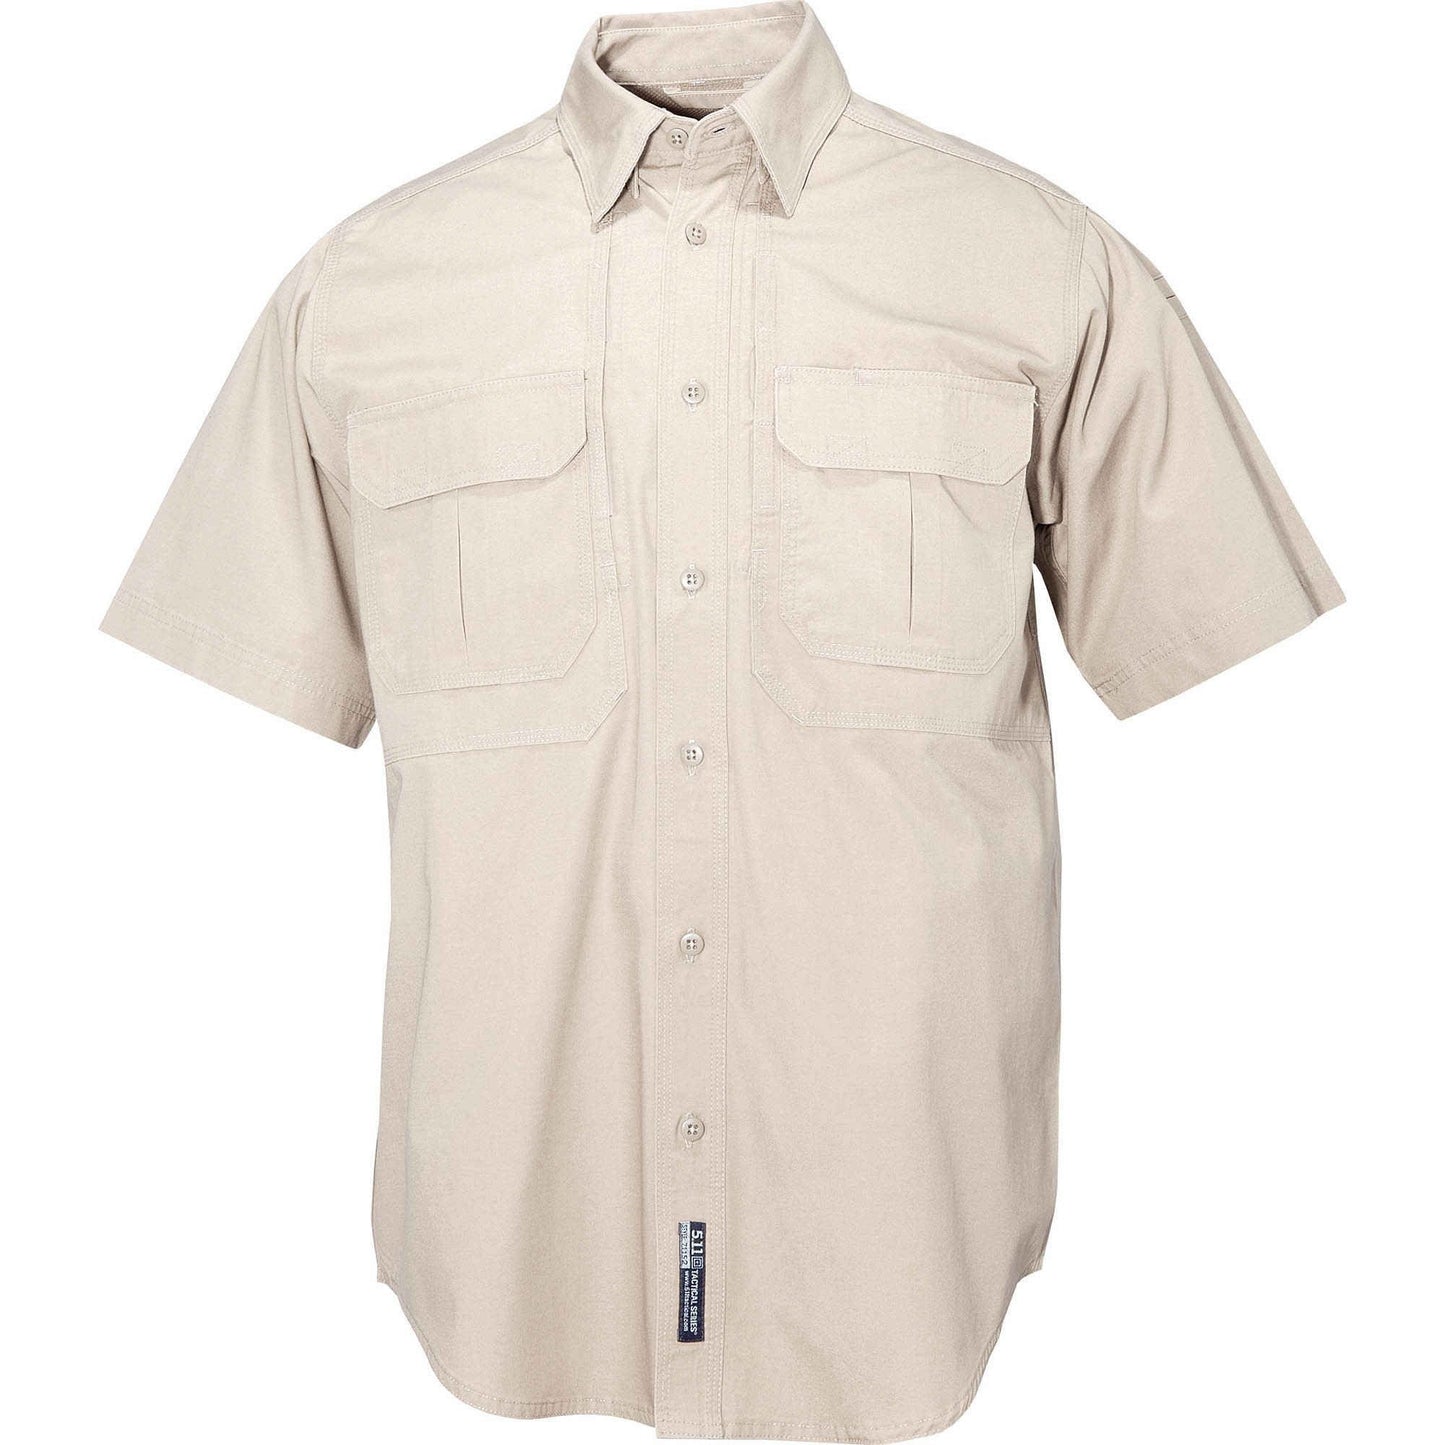 5.11 Tactical Men's Short Sleeve Tactical Shirt Khaki Tactical Distributors Ltd New Zealand